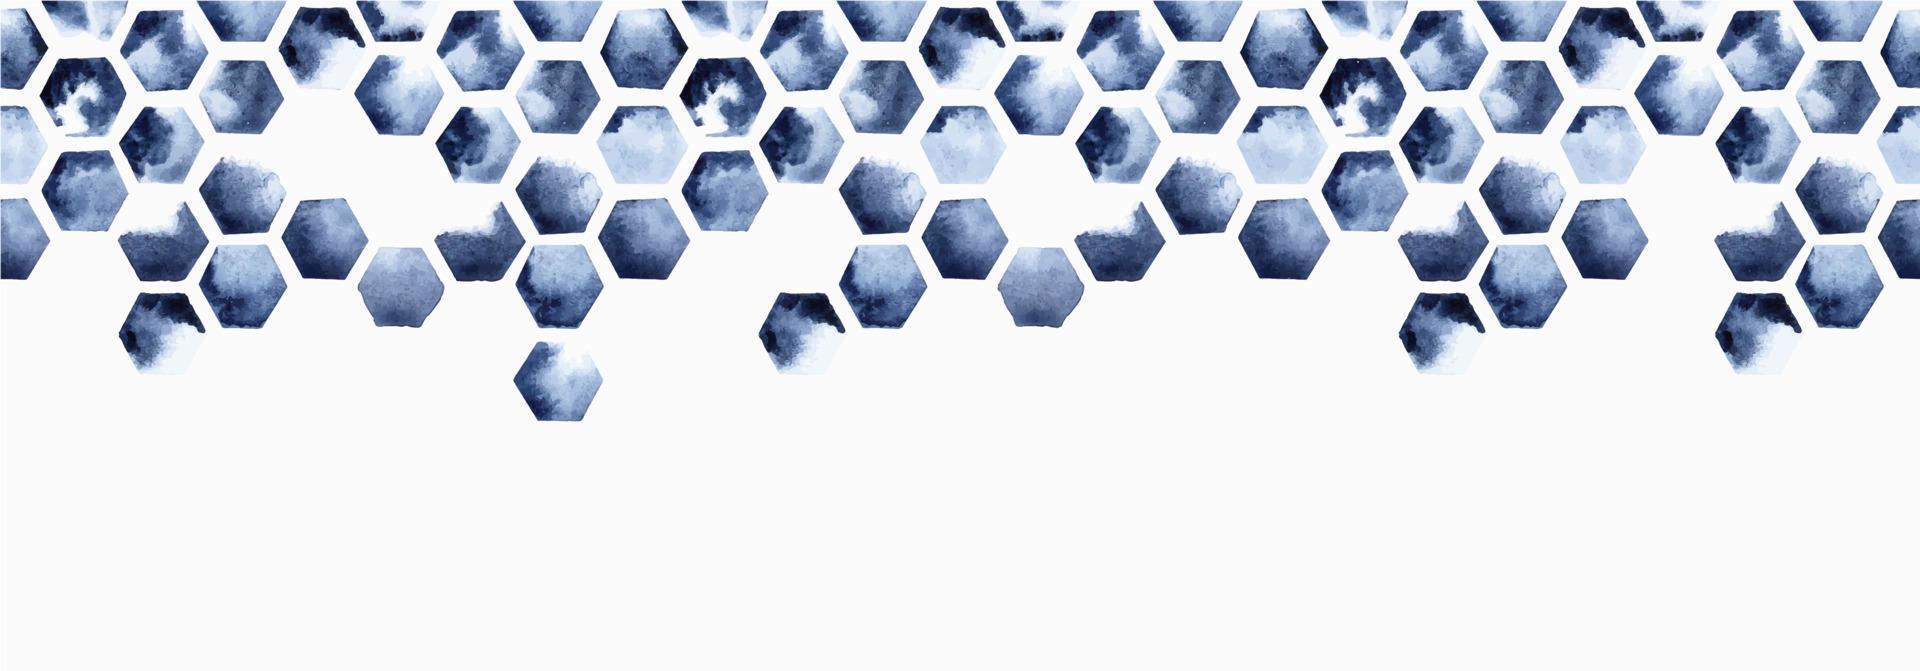 borde sin costuras de ilustración acuarela, patrón de mosaico hexagonal. panal de abeja, azul índigo sobre un fondo blanco. impresión abstracta con manchas de pintura. vector